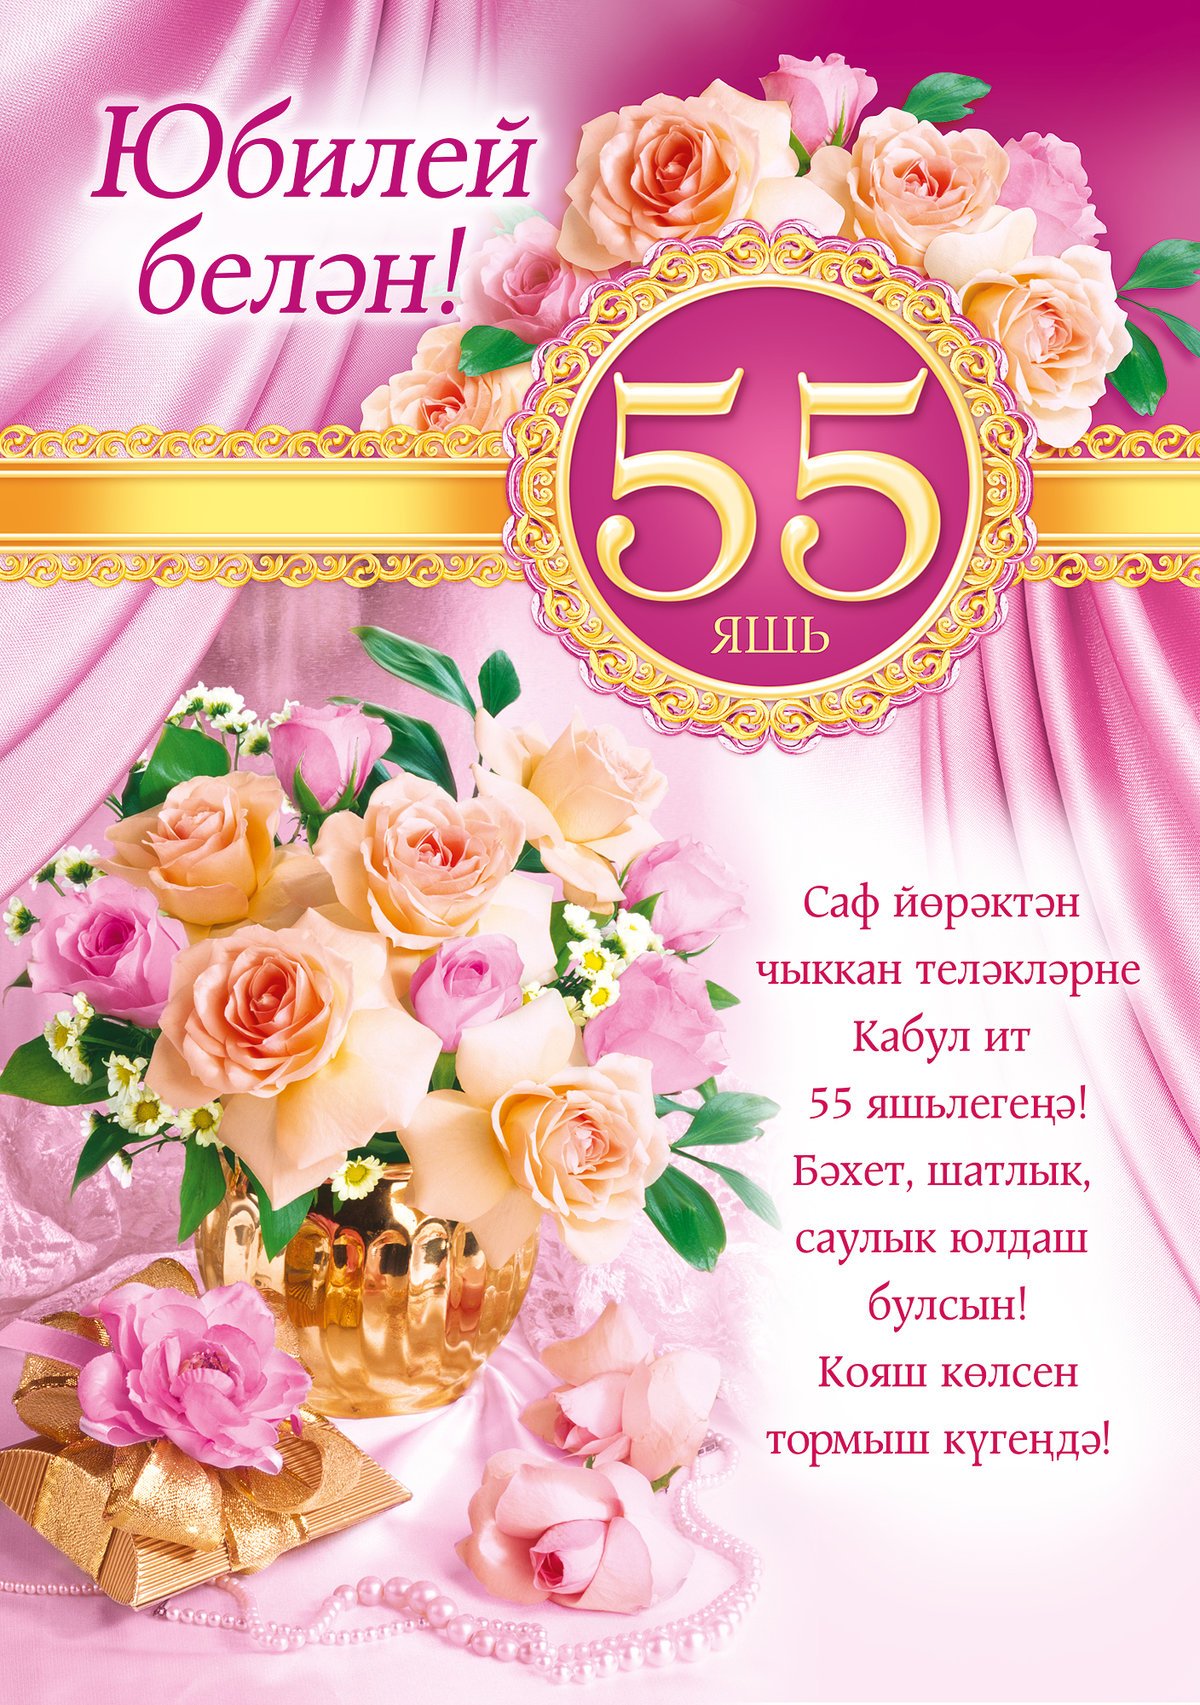 Поздравления на 55 лет для женщины